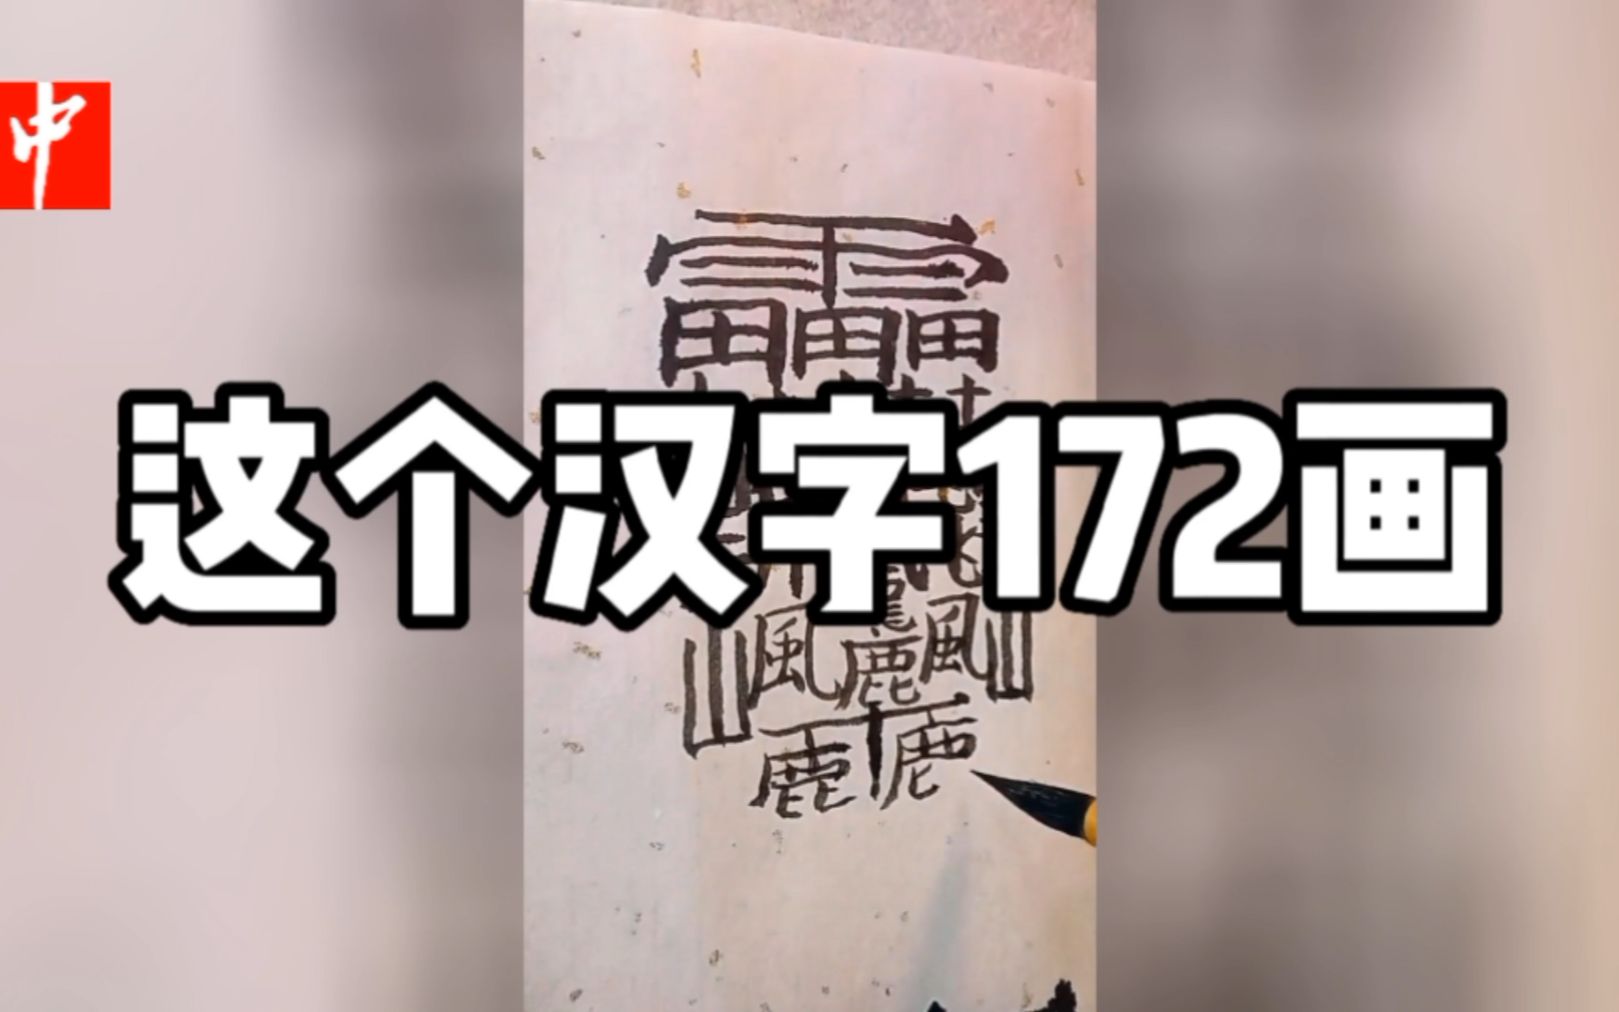 这个汉字有172笔画,是中国笔画最多的字,谁知道什么意思